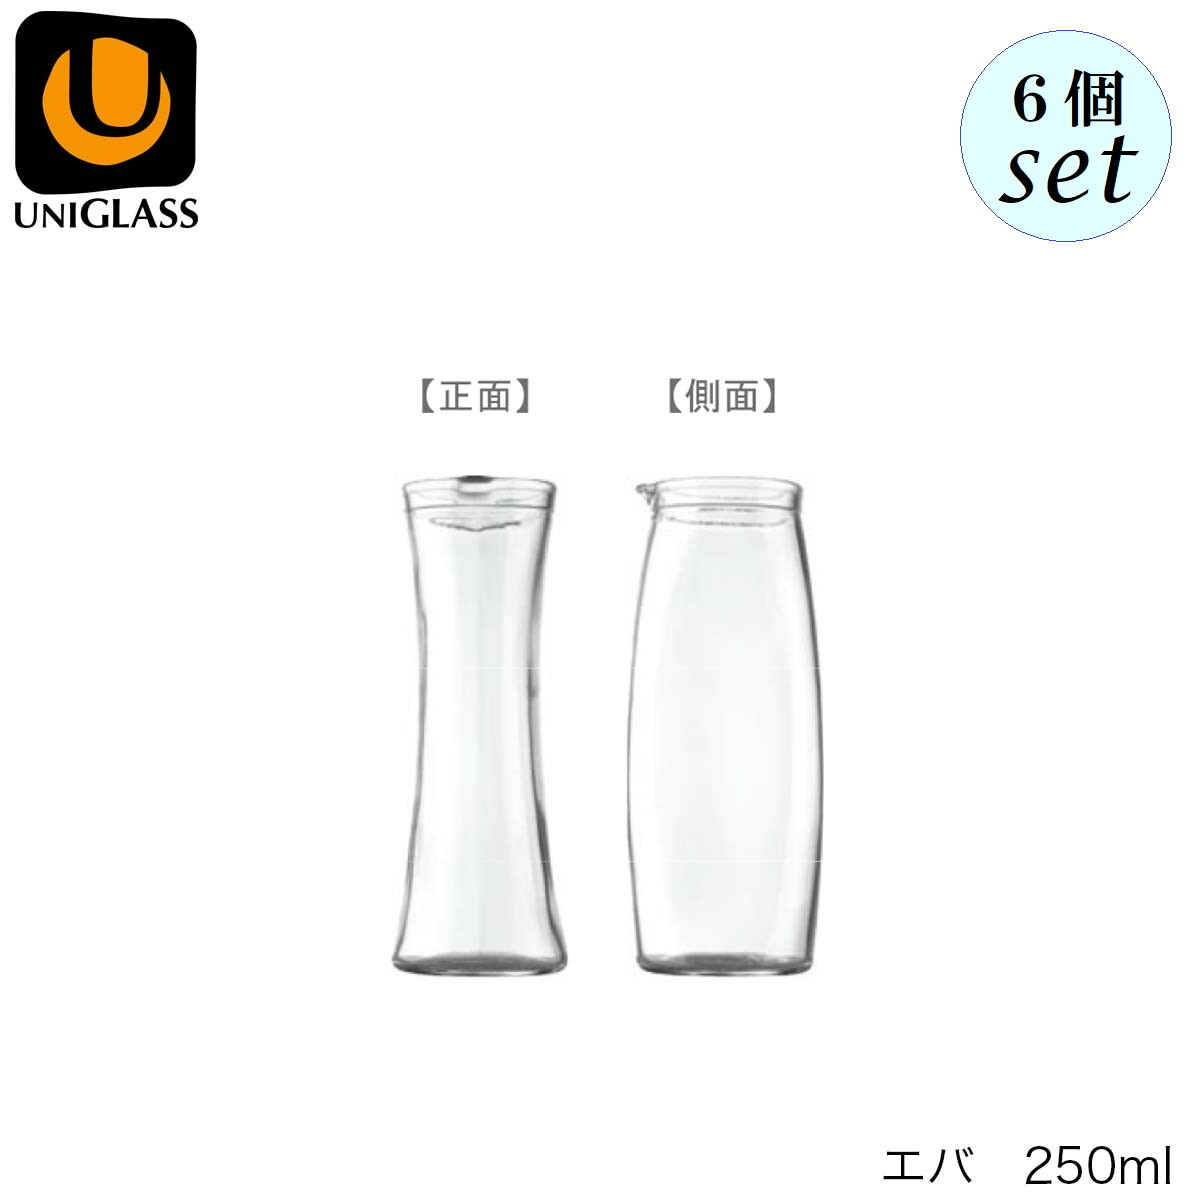 6個セットでの販売です 口径68mm　高さ171mm 容量　250ml　満杯容量 素材　ソーダガラス 【YIOULA Glassworks UNIGLASS ユイオーラ グラスワークス ユニグラス】 1947年、ブルガリアに設立。 ヨーロッパ大陸の主要なガラスメーカーとして発展しました。 2009年に日本に初上陸しました。UNIGLASS ユニグラス エバ 250ml 6個セット YIOULA Glassworks ブルガリア製 デキャンタ ブルガリア製 デキャンタ 10